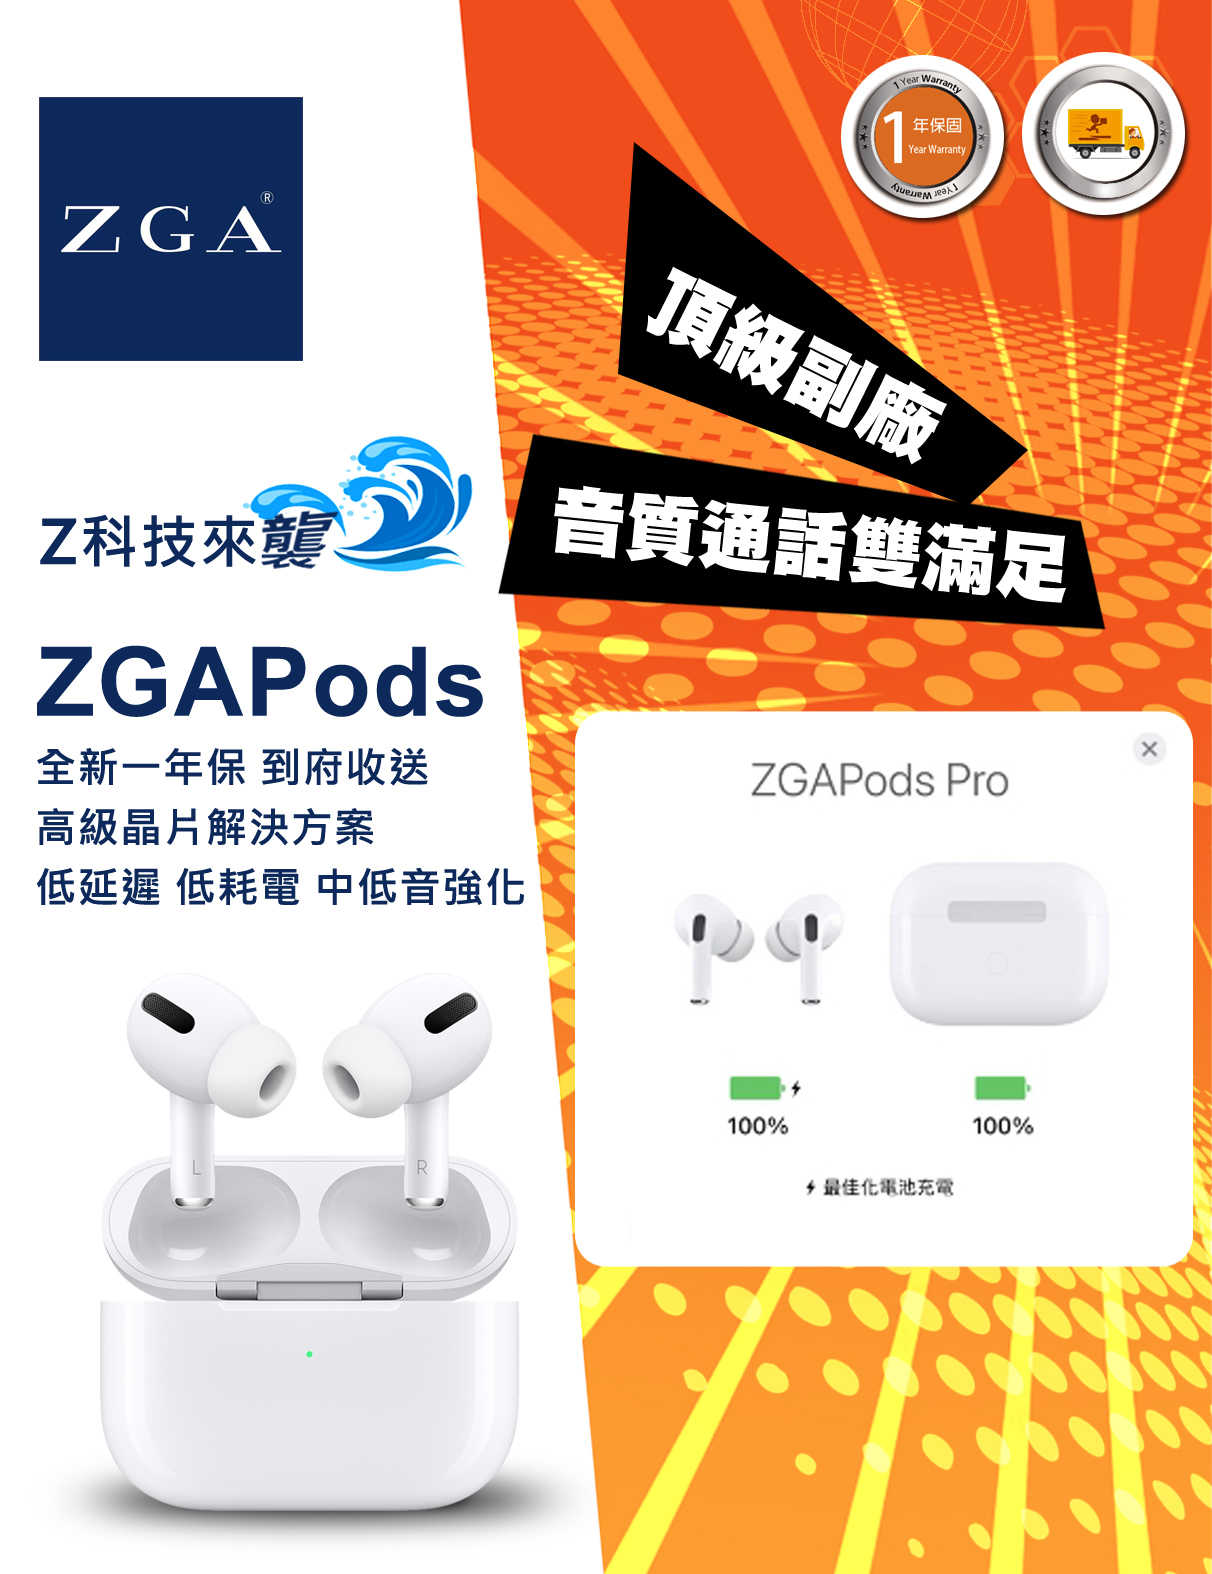 ZGA原廠 ZGApods Pro 藍芽耳機 降躁/通透 完美頂配 支援分期 享受無負擔 一年到府收送